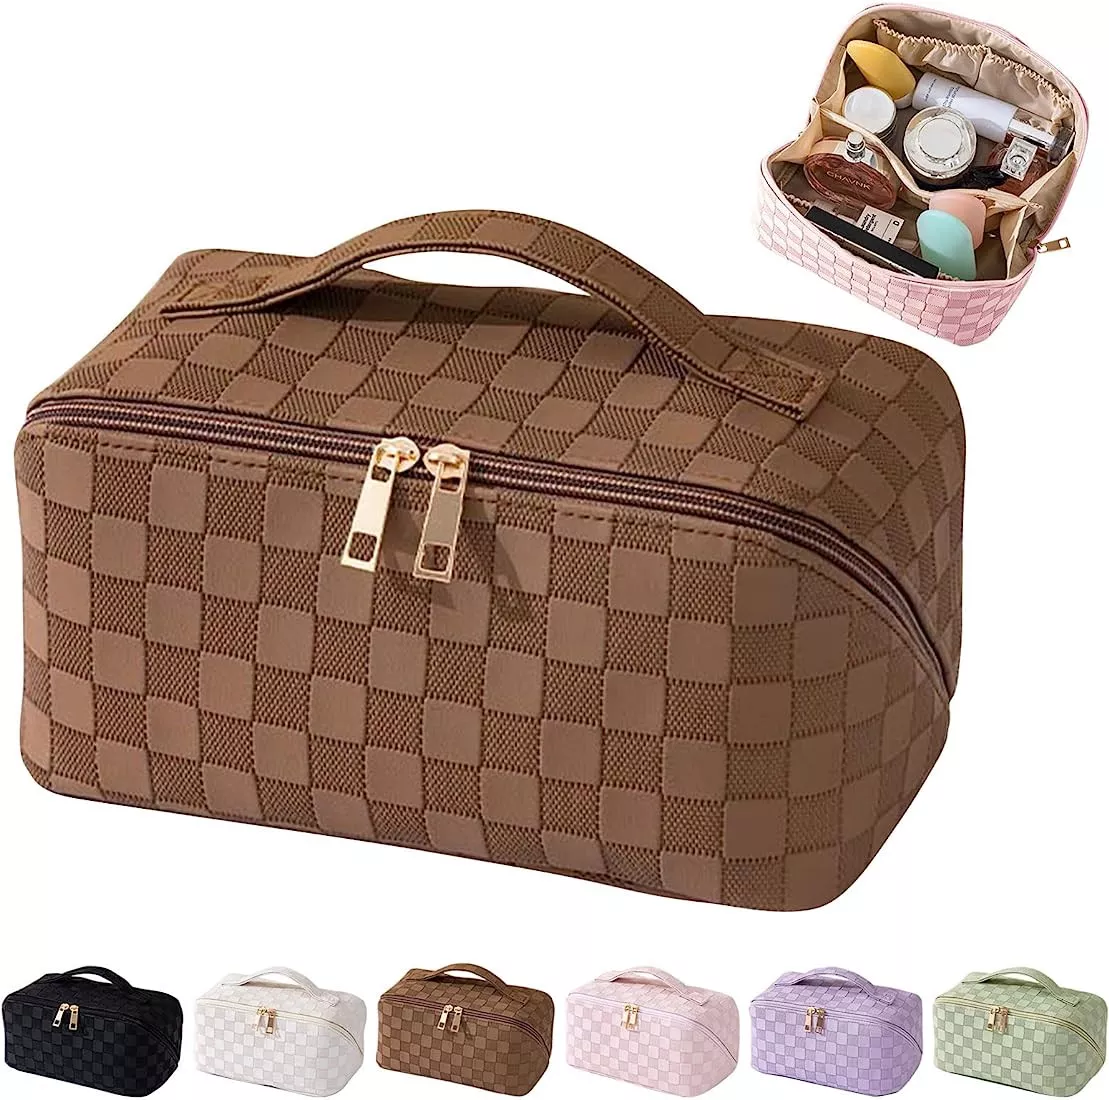  MINGRI Large Capacity Travel Cosmetic Bag for Women